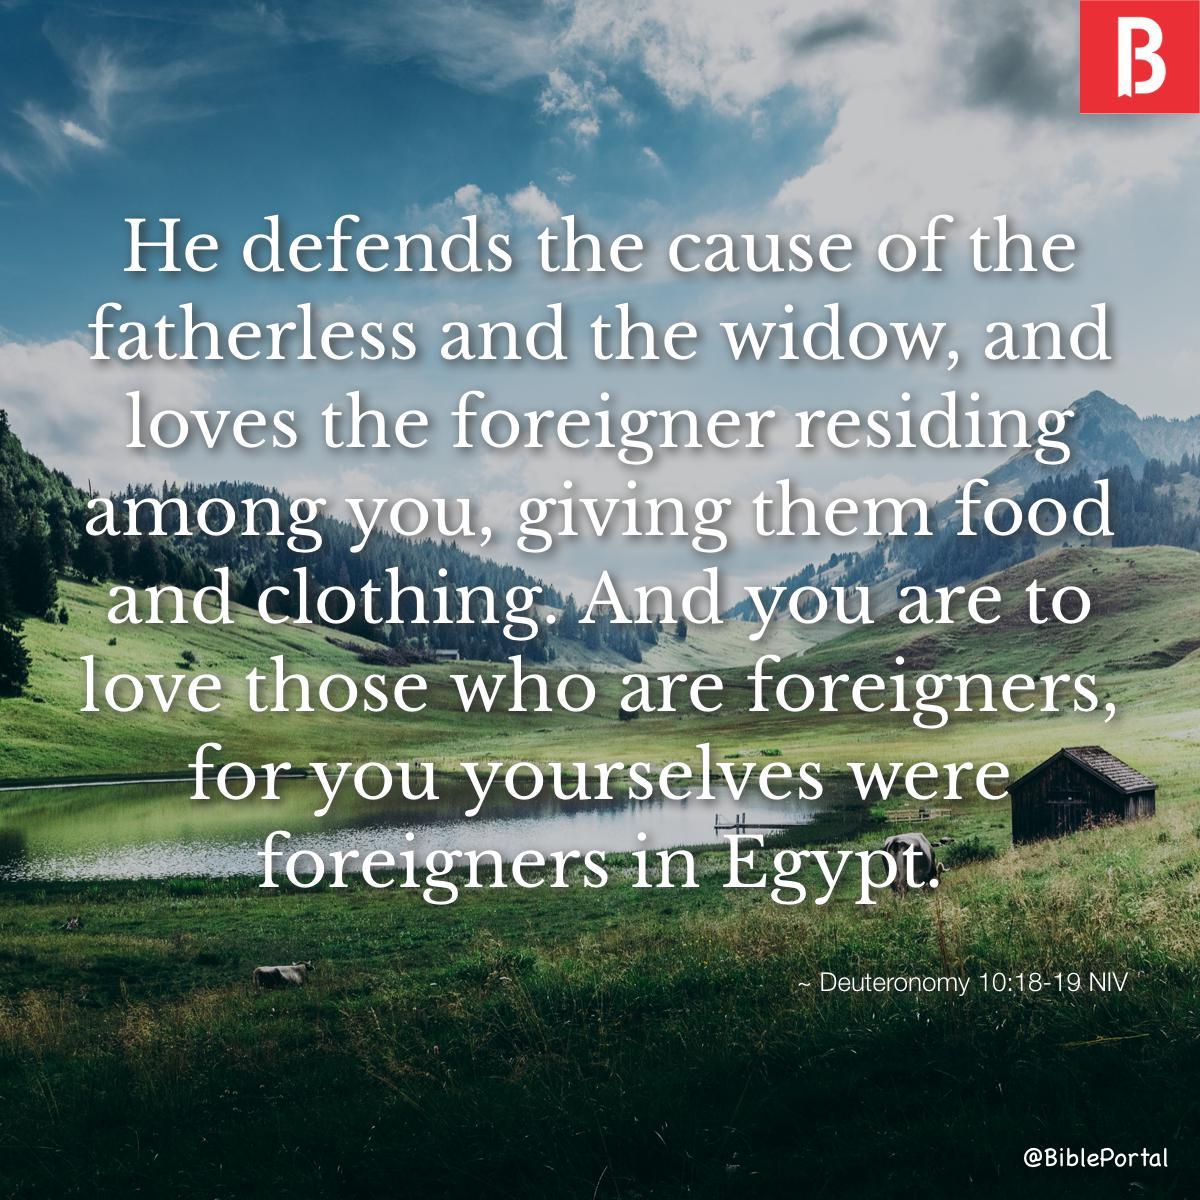 Deuteronomy 10:18-19 NIV